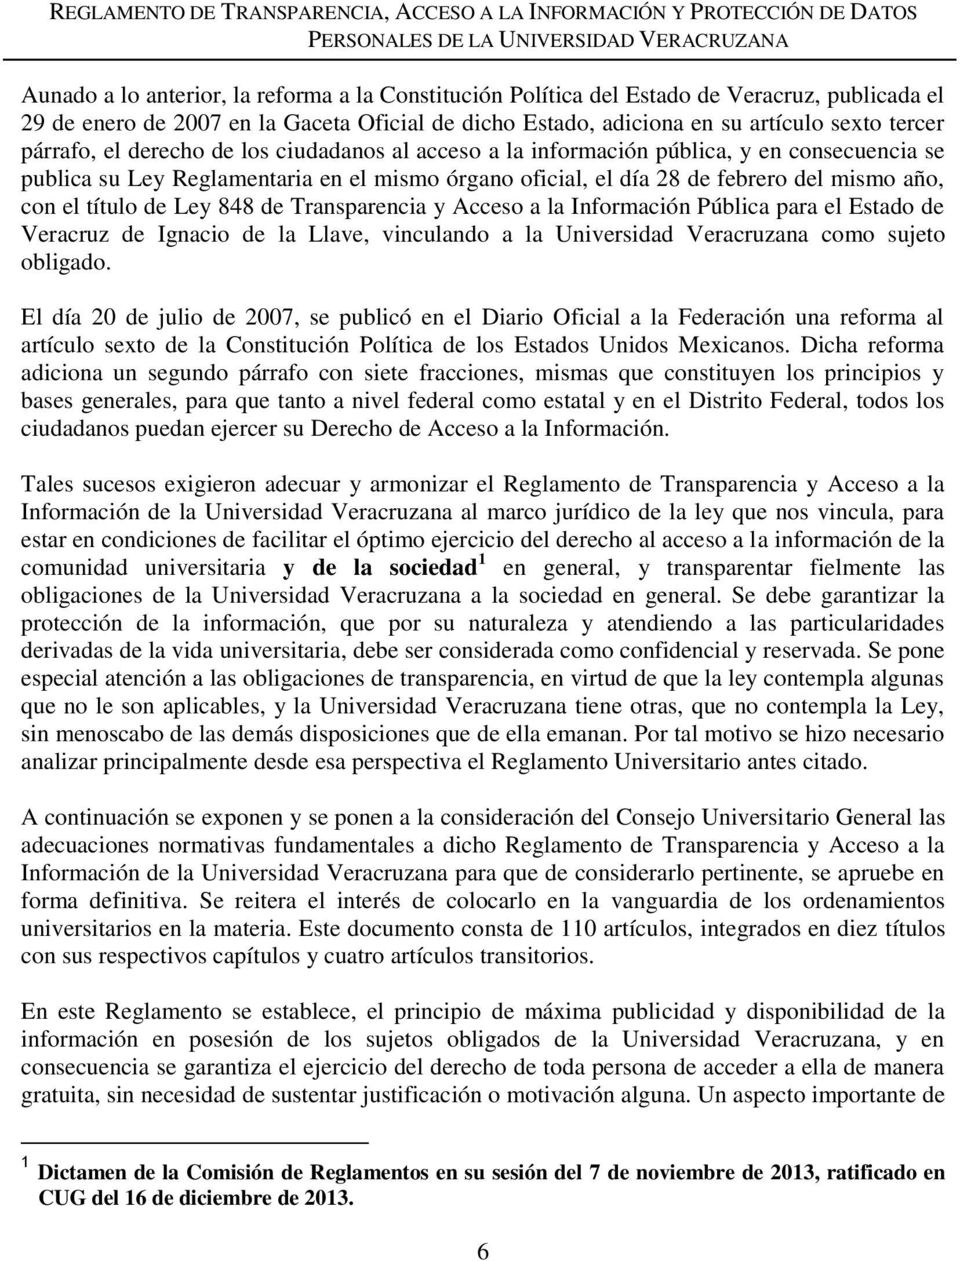 título de Ley 848 de Transparencia y Acceso a la Información Pública para el Estado de Veracruz de Ignacio de la Llave, vinculando a la Universidad Veracruzana como sujeto obligado.